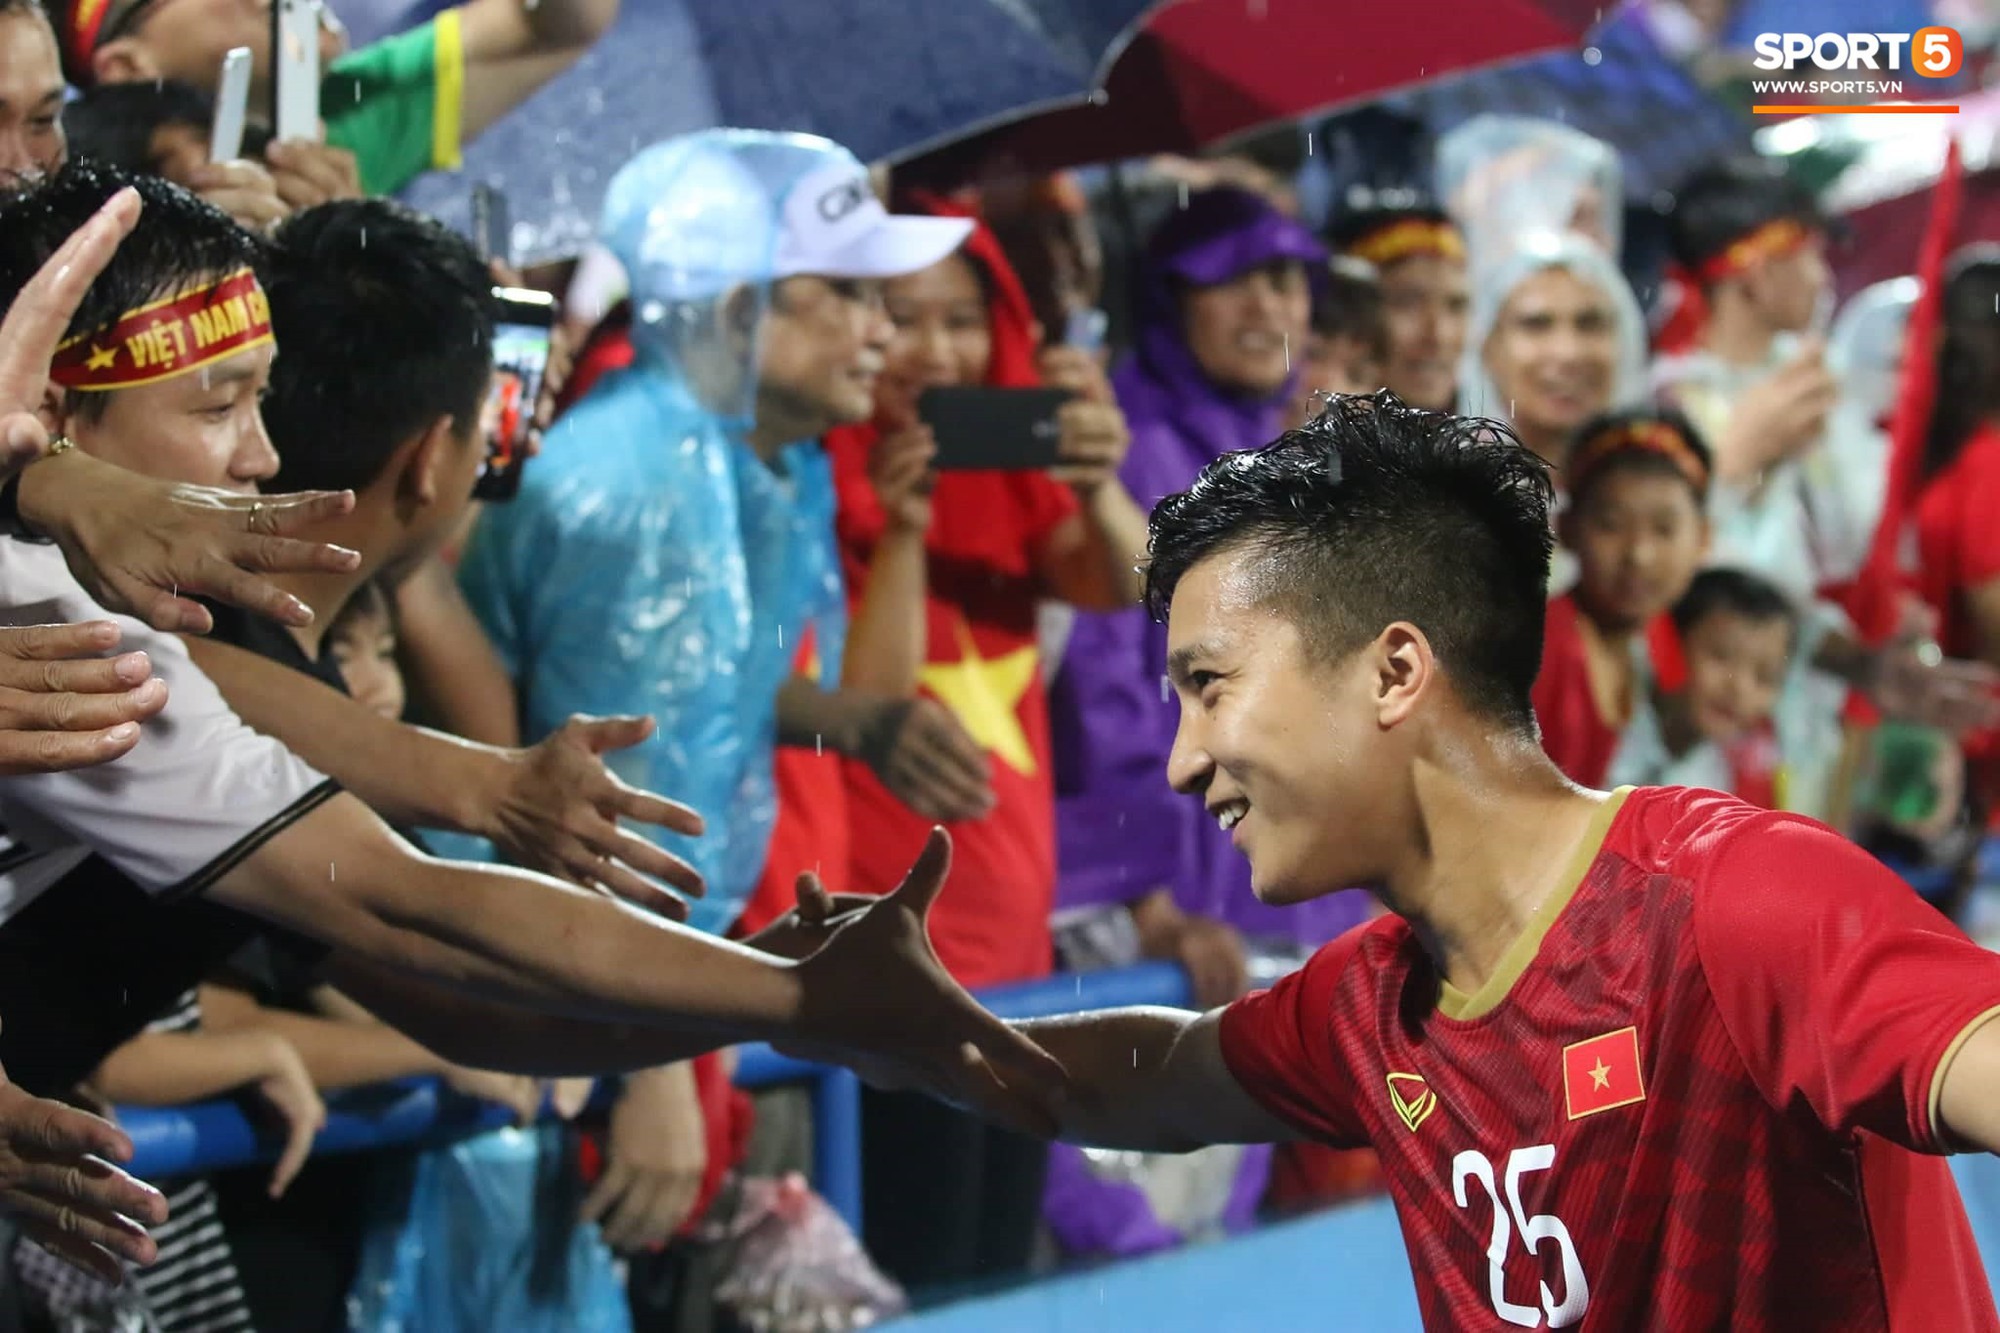 Sân Việt Trì biến thành biển rác sau chiến thắng của U23 Việt Nam - Ảnh 8.